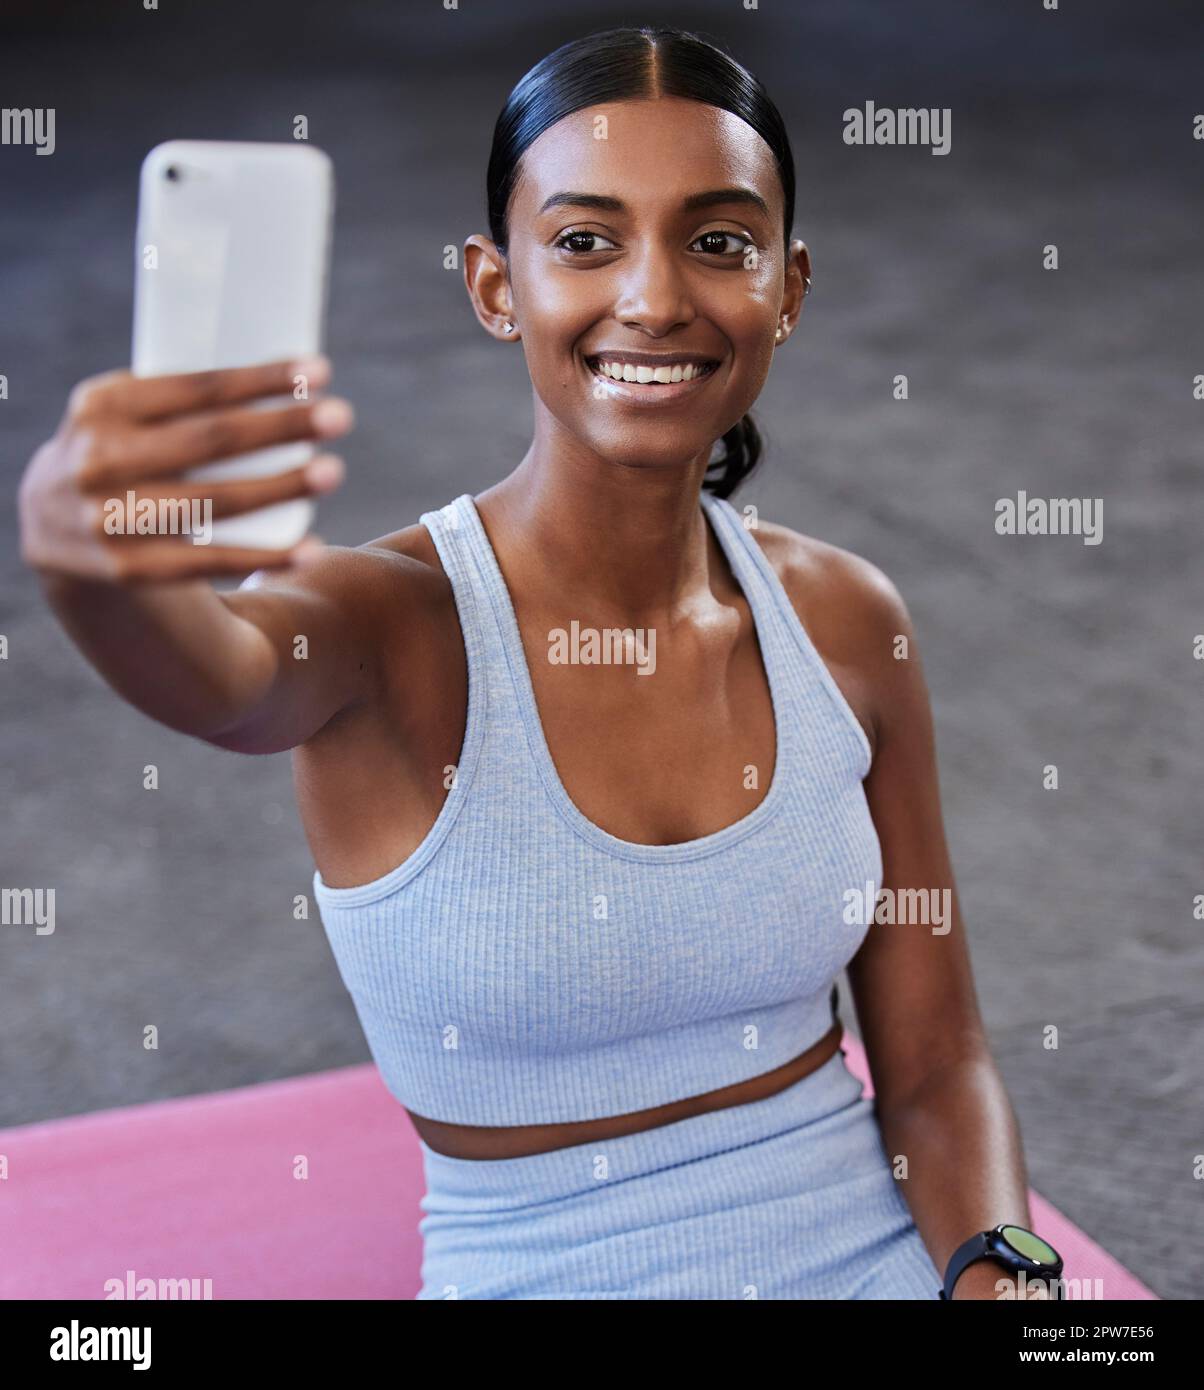 Fitness-Selfie, Sportfläche und Frau mit Post in sozialen Medien, Aktualisierung von Profilbildern oder Blog auf der Wellness-Website in der mobilen App. Smartphone-Fotografie, Stockfoto